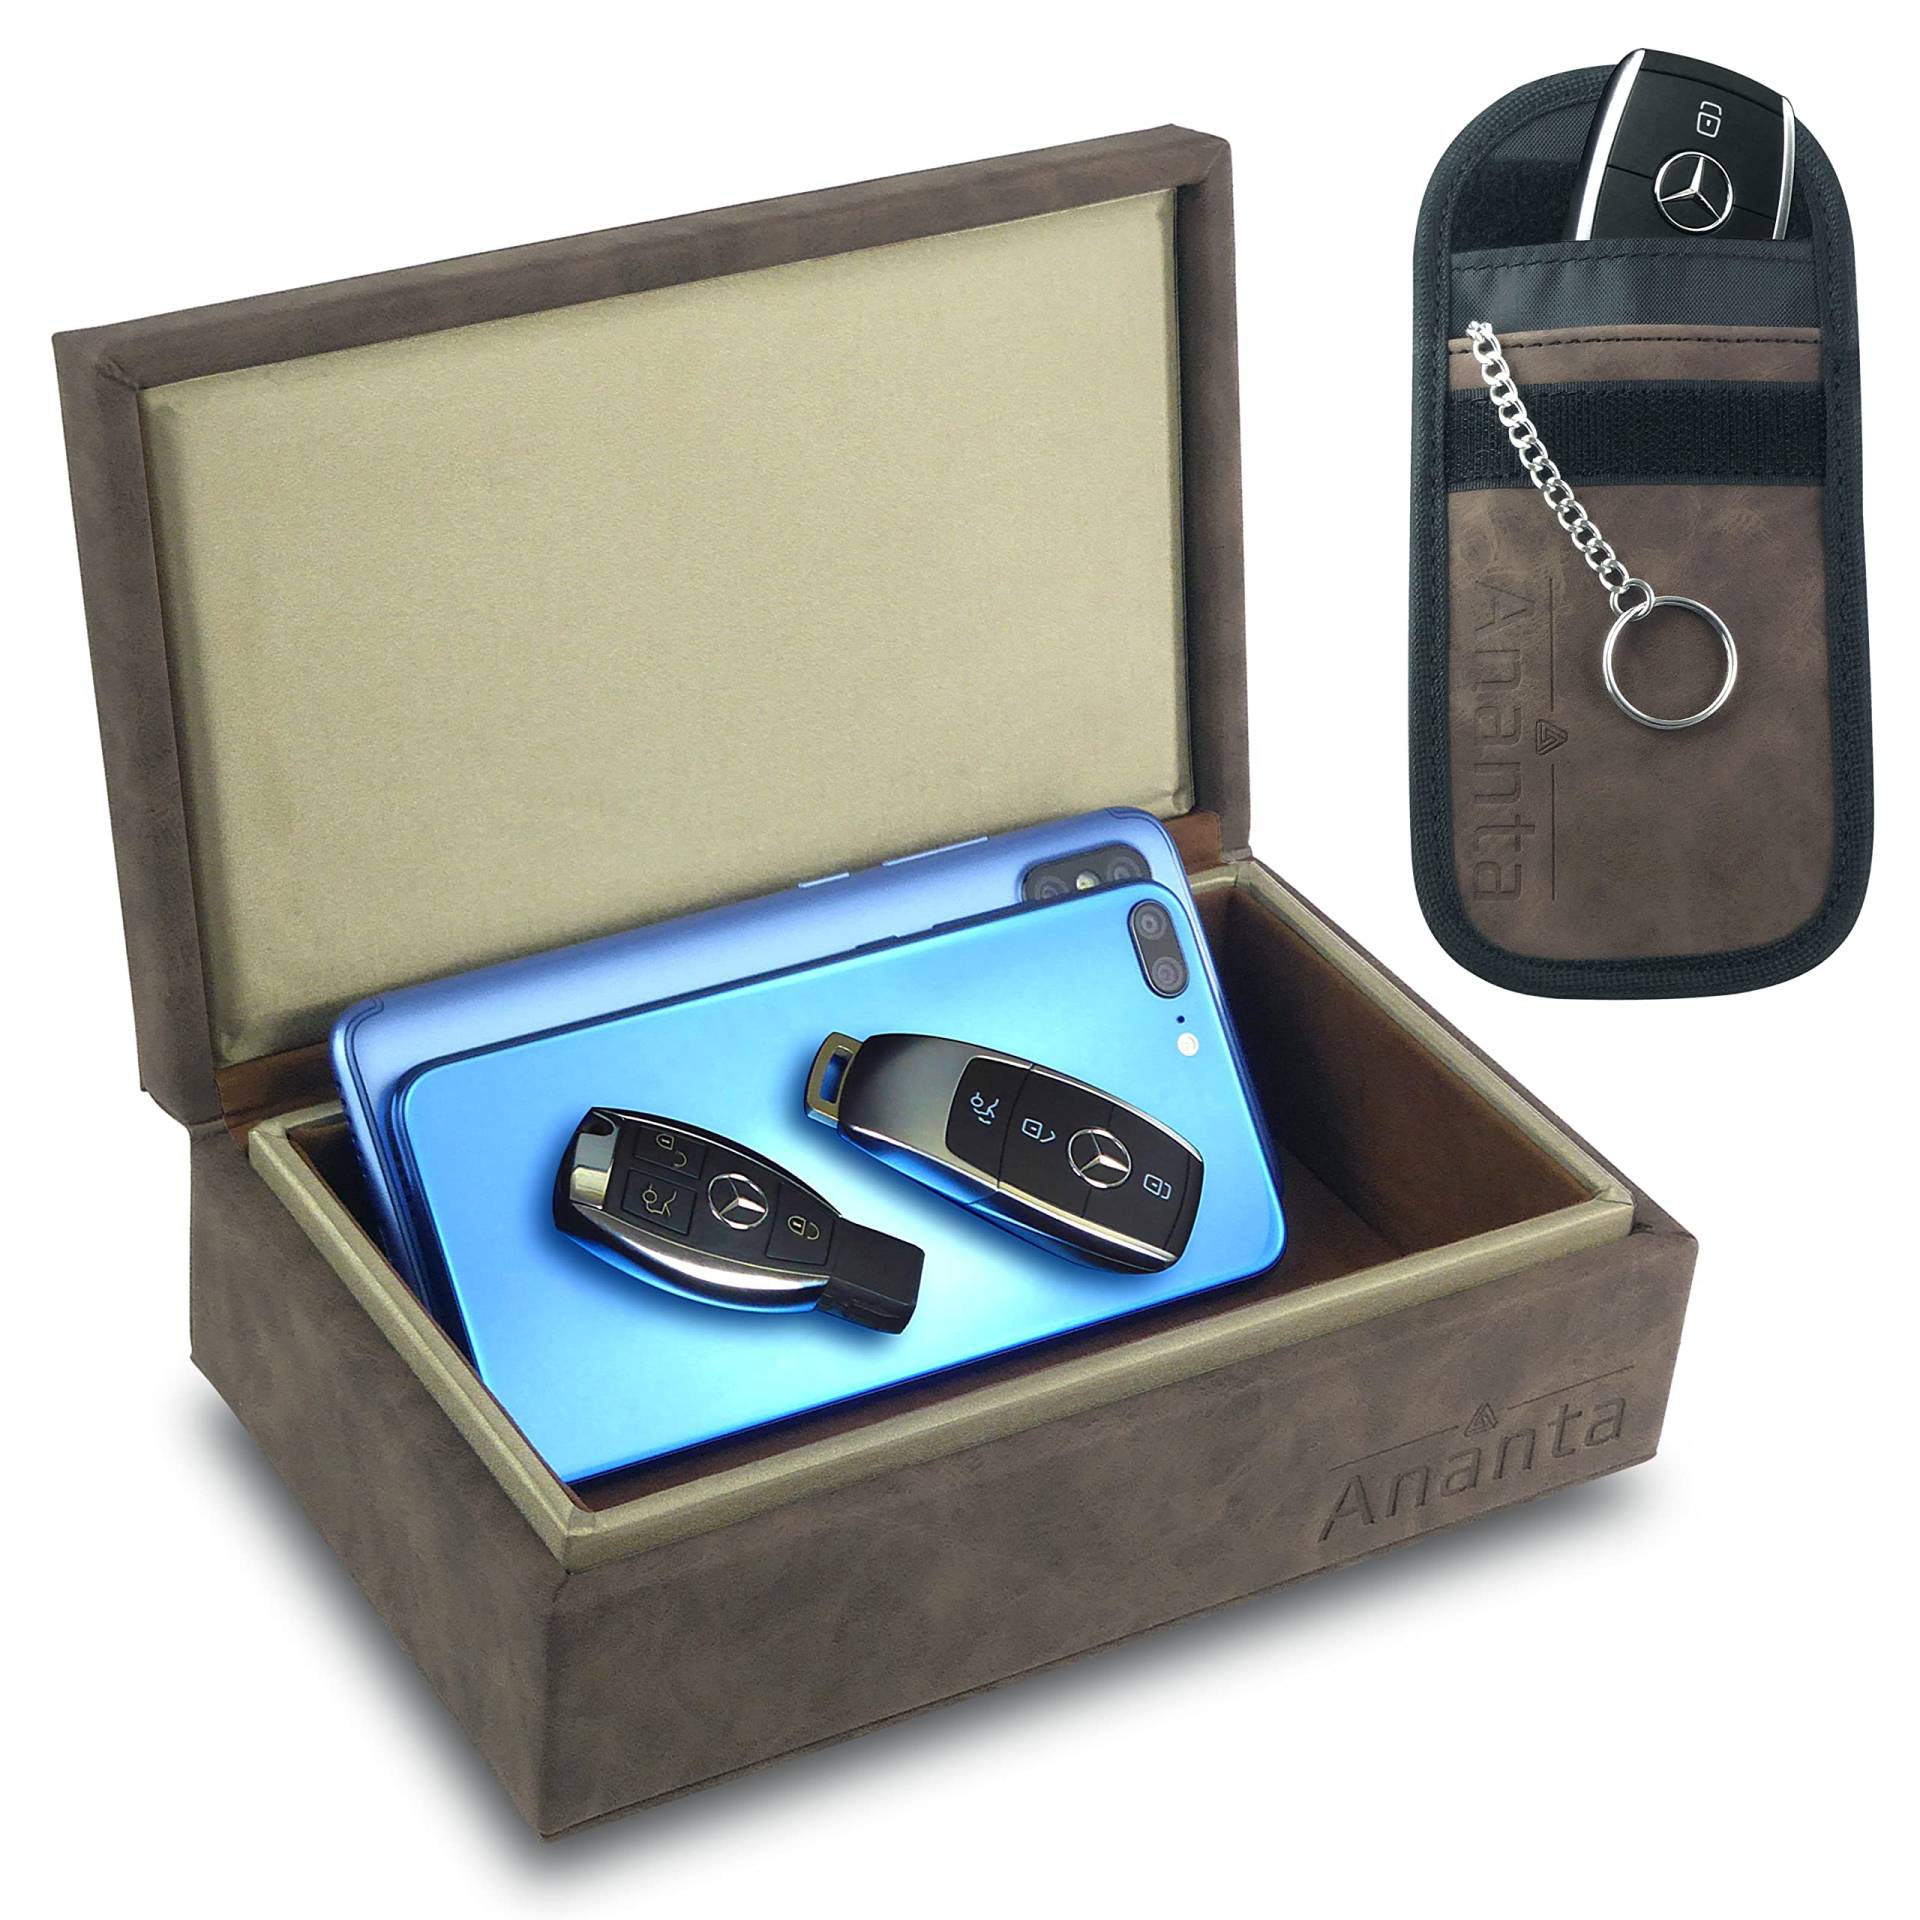 Ananta Faraday Box für Autoschlüssel,Autoschlüssel Signal Blocker Box & Tasche Anti-Diebstahl-Sicherheit, am besten für RFID Schlüsselkasten & Signalblockierung von schlüssellosen Eingang,groß, braun von Ananta